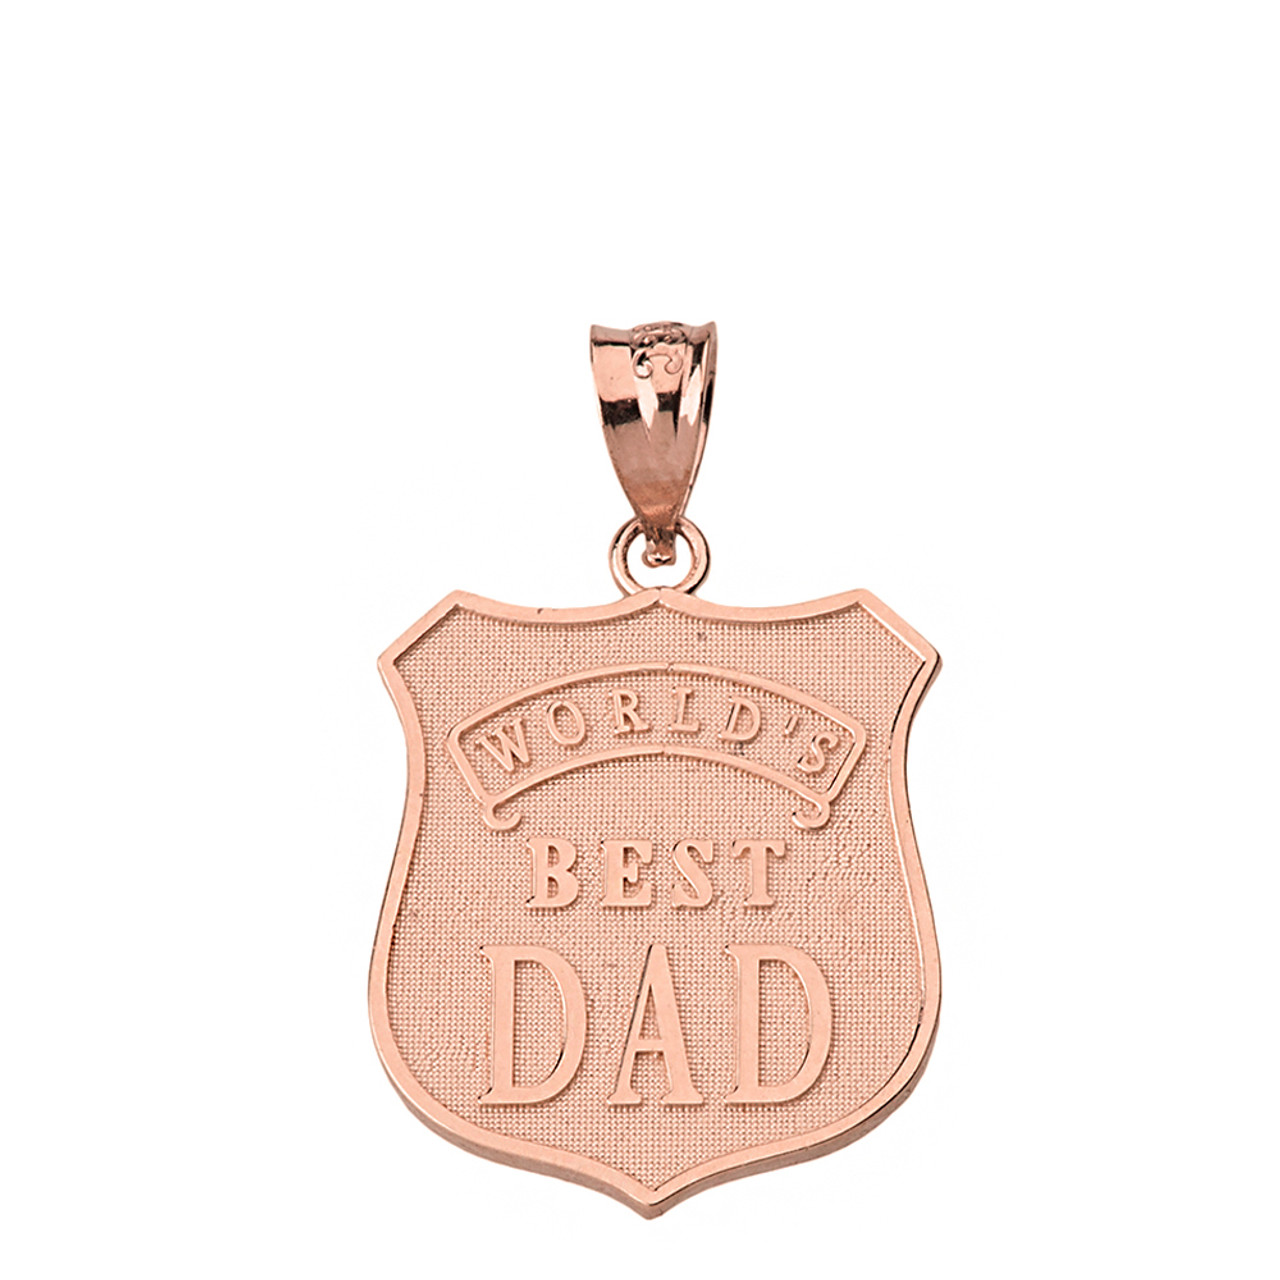 Matte Finish 10k Rose Gold Worlds Best Dad Badge Pendant Necklace